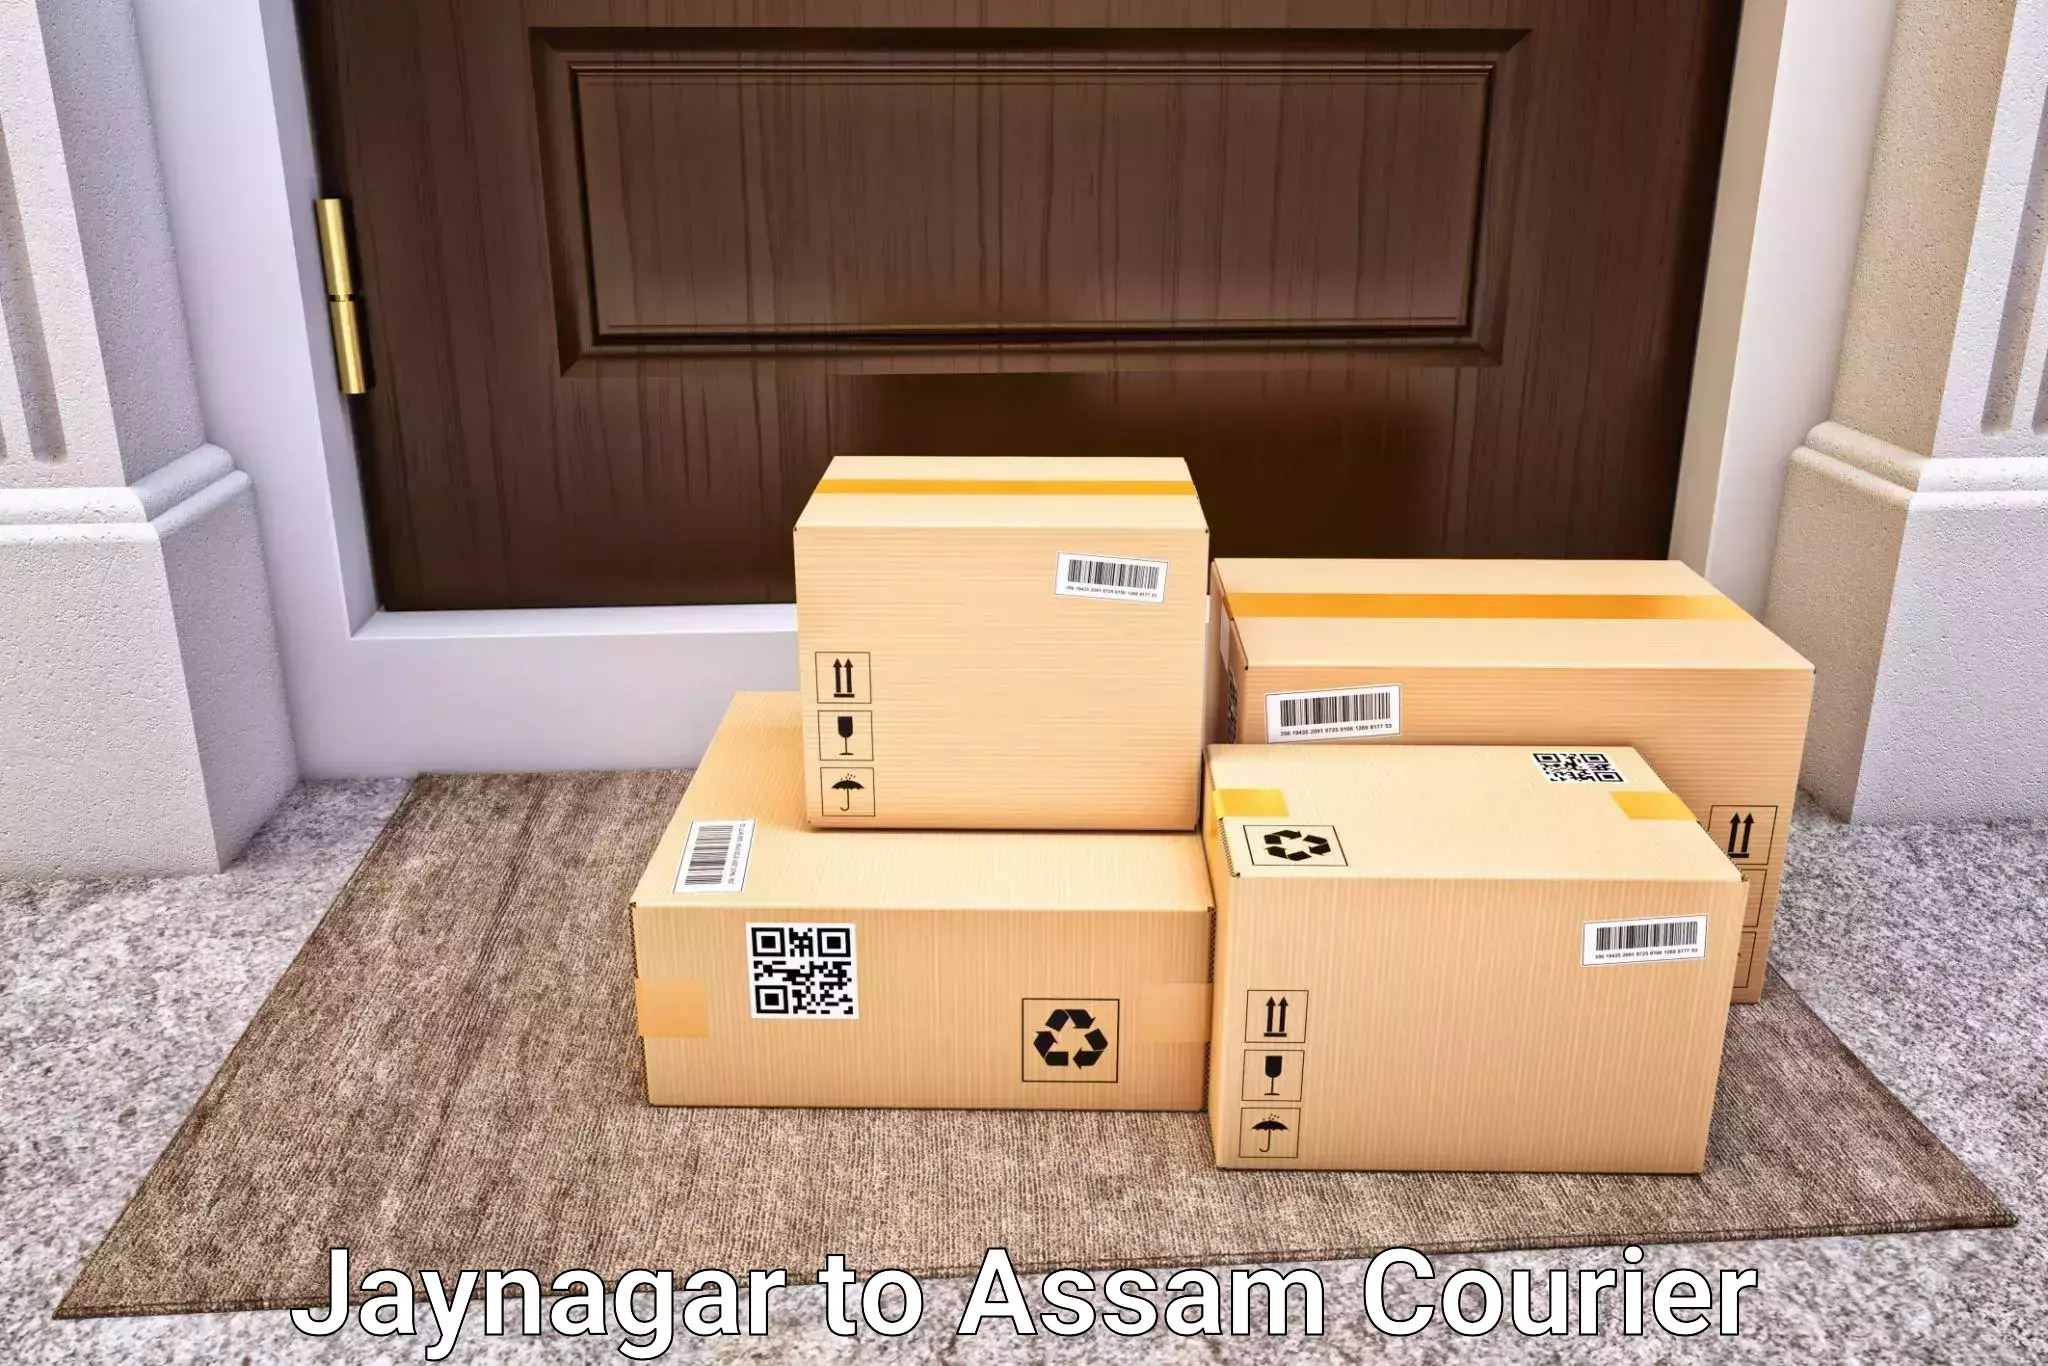 Nationwide luggage courier Jaynagar to Dhupdhara